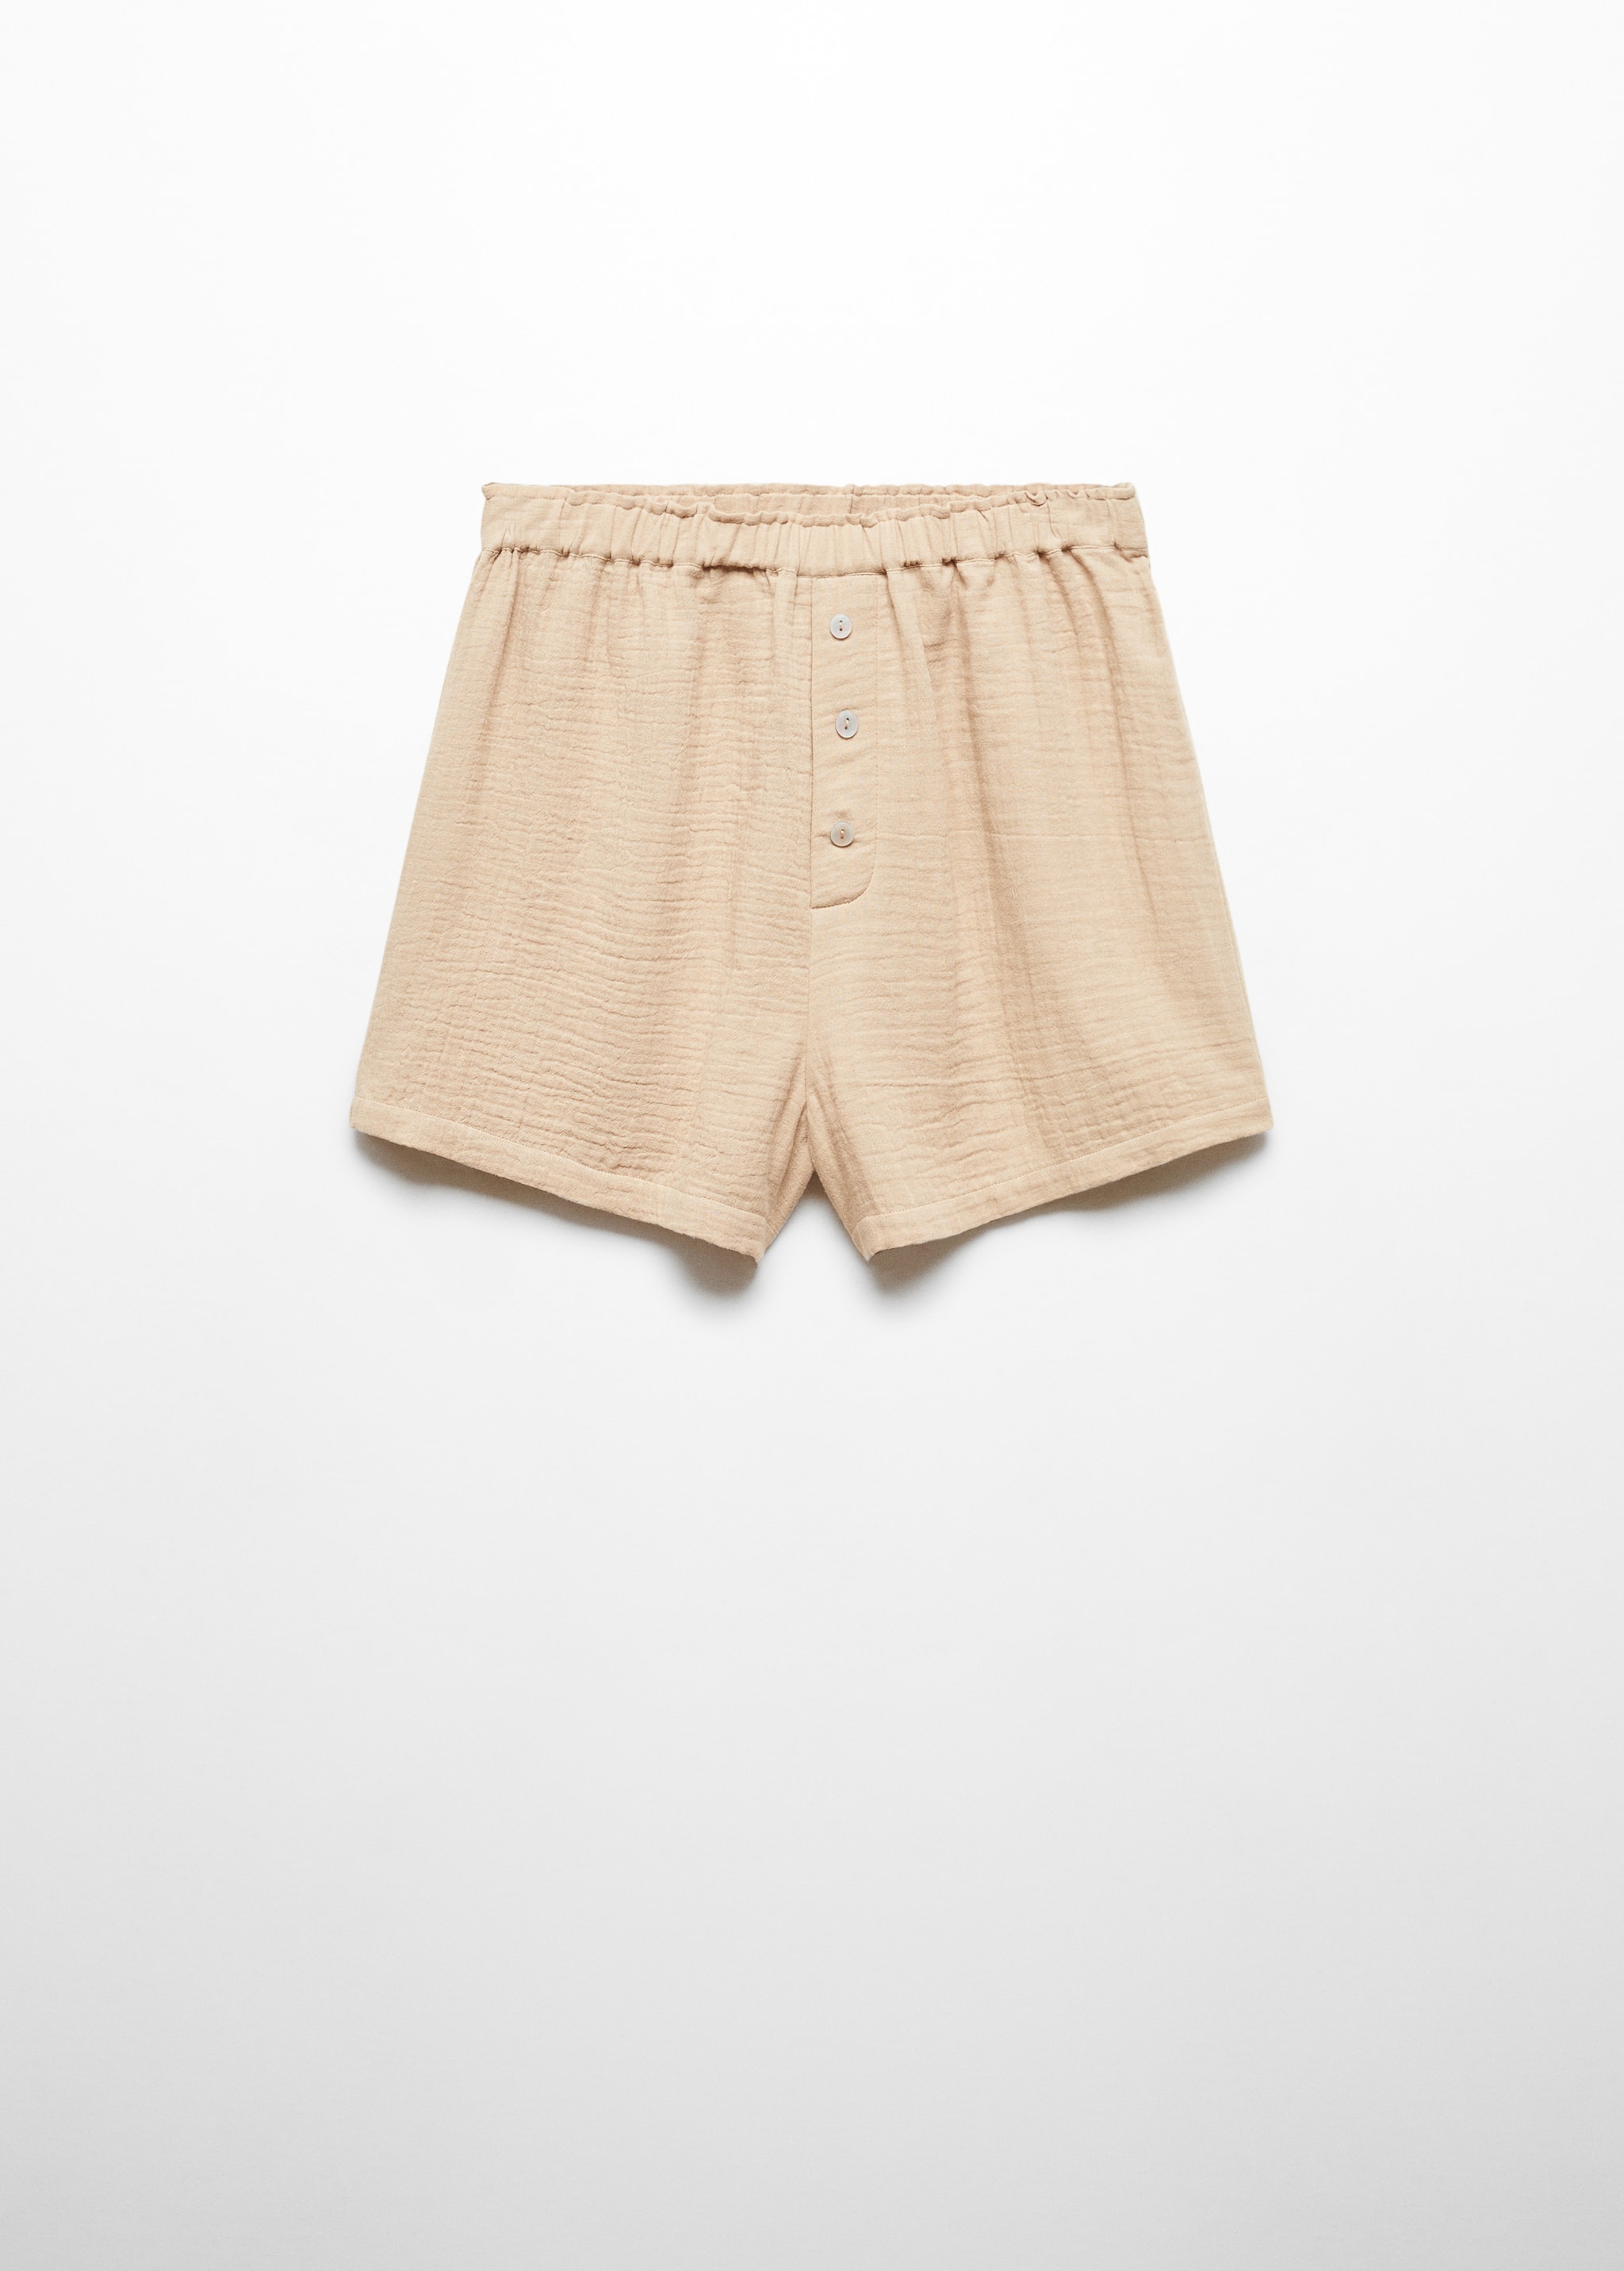 Cotton gauze pajama shorts - Article without model